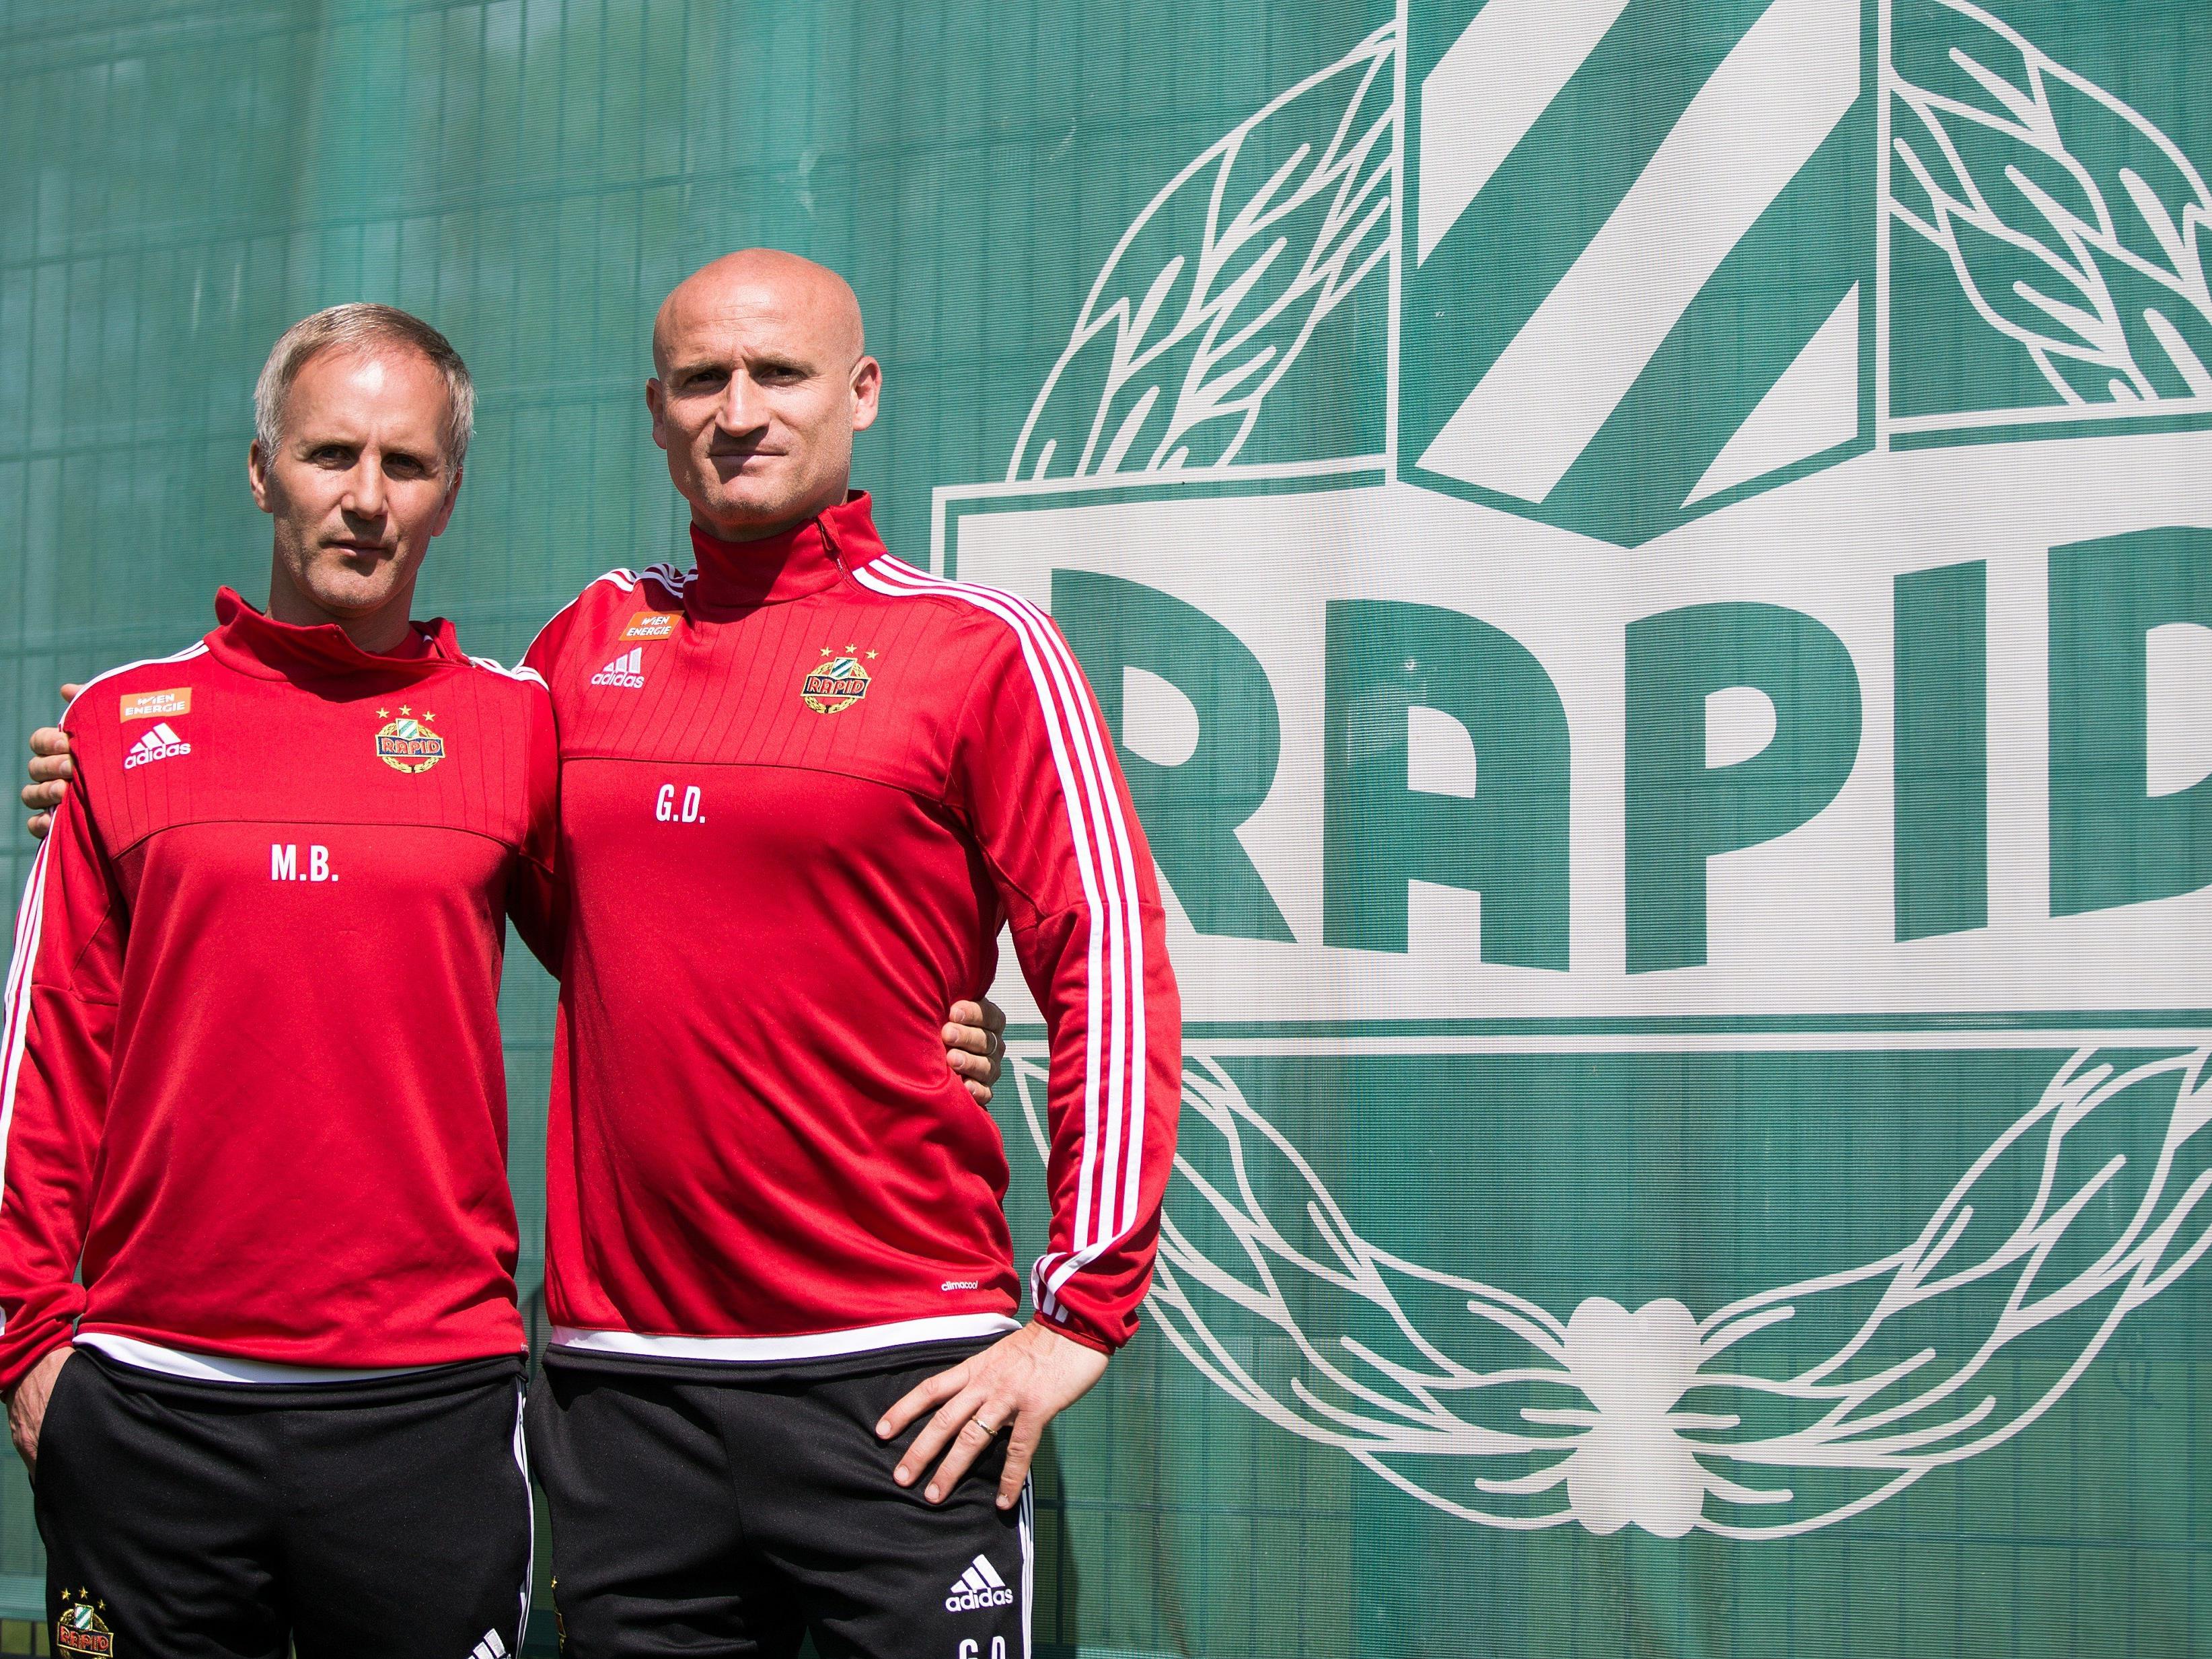 Rapids neues Trainergespann Martin Bernhard und Goran Djuricin.